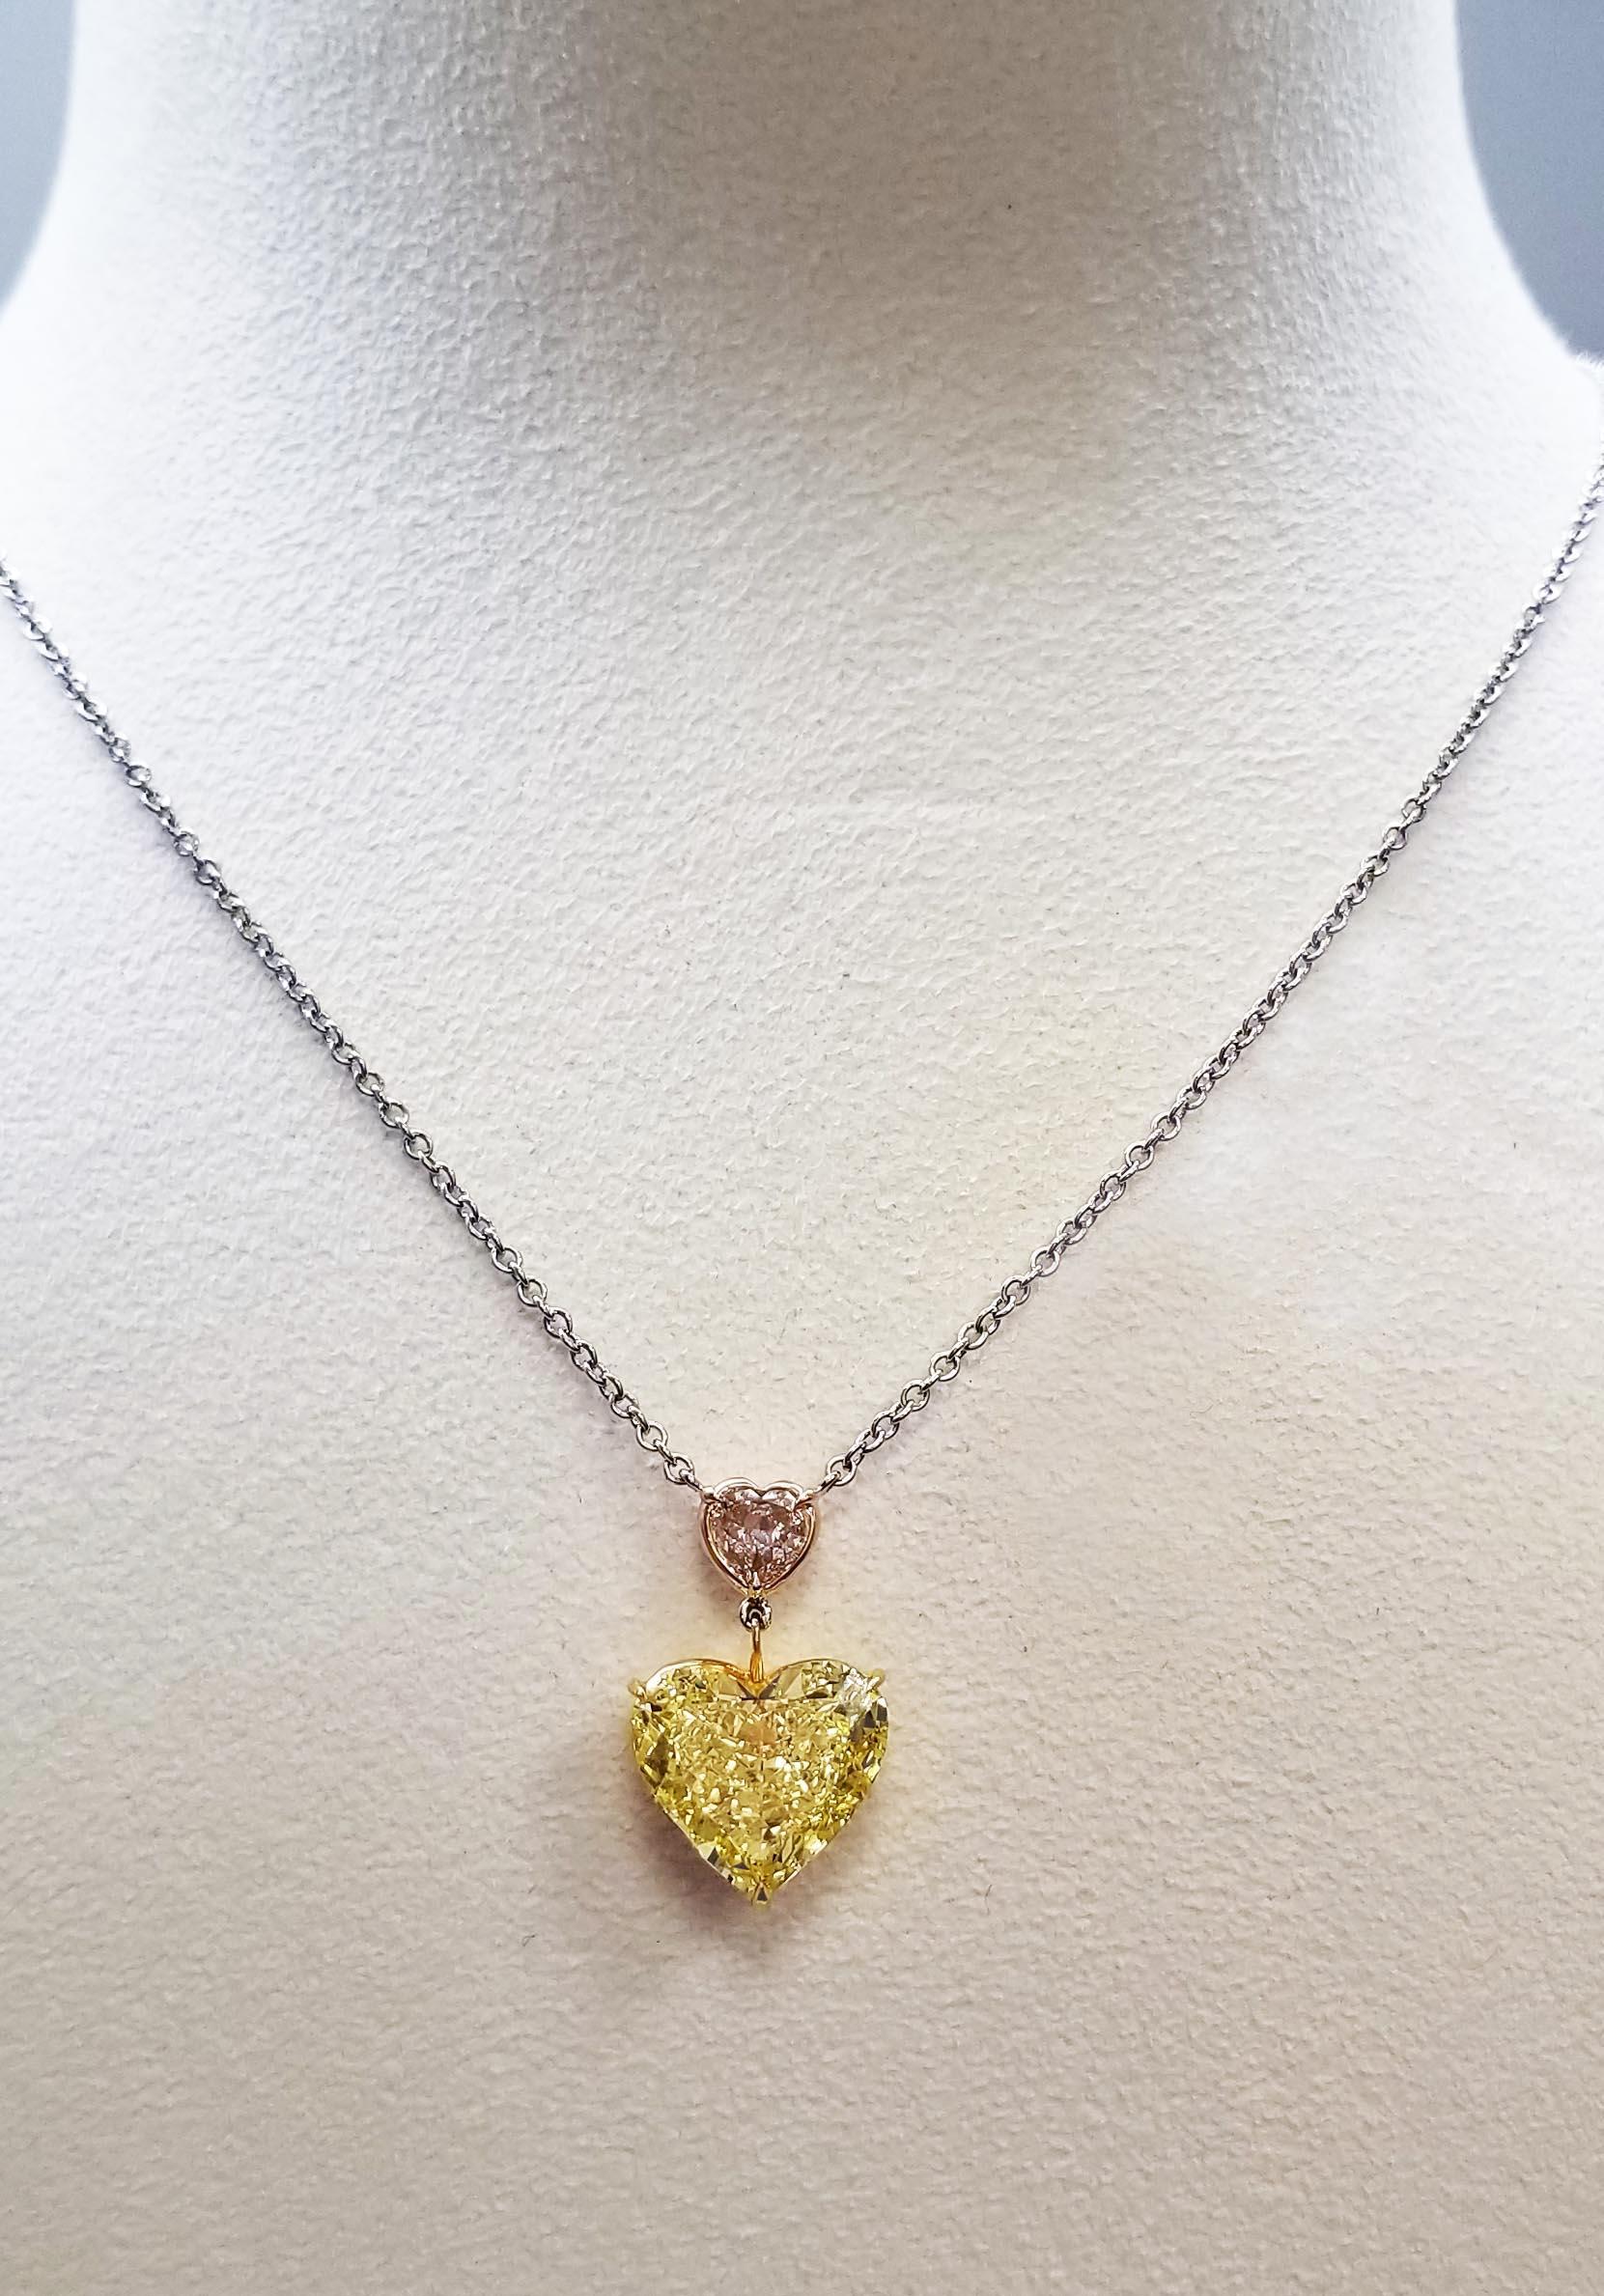 SCARSELLI présente ce diamant en forme de cœur de 6,42 carats de couleur Fancy Vivid Yellow et un diamant en forme de cœur de 0,51 carat de couleur rose pâle I2 montés sur un collier en chaîne en platine et en or blanc 18 carats (voir la photo du